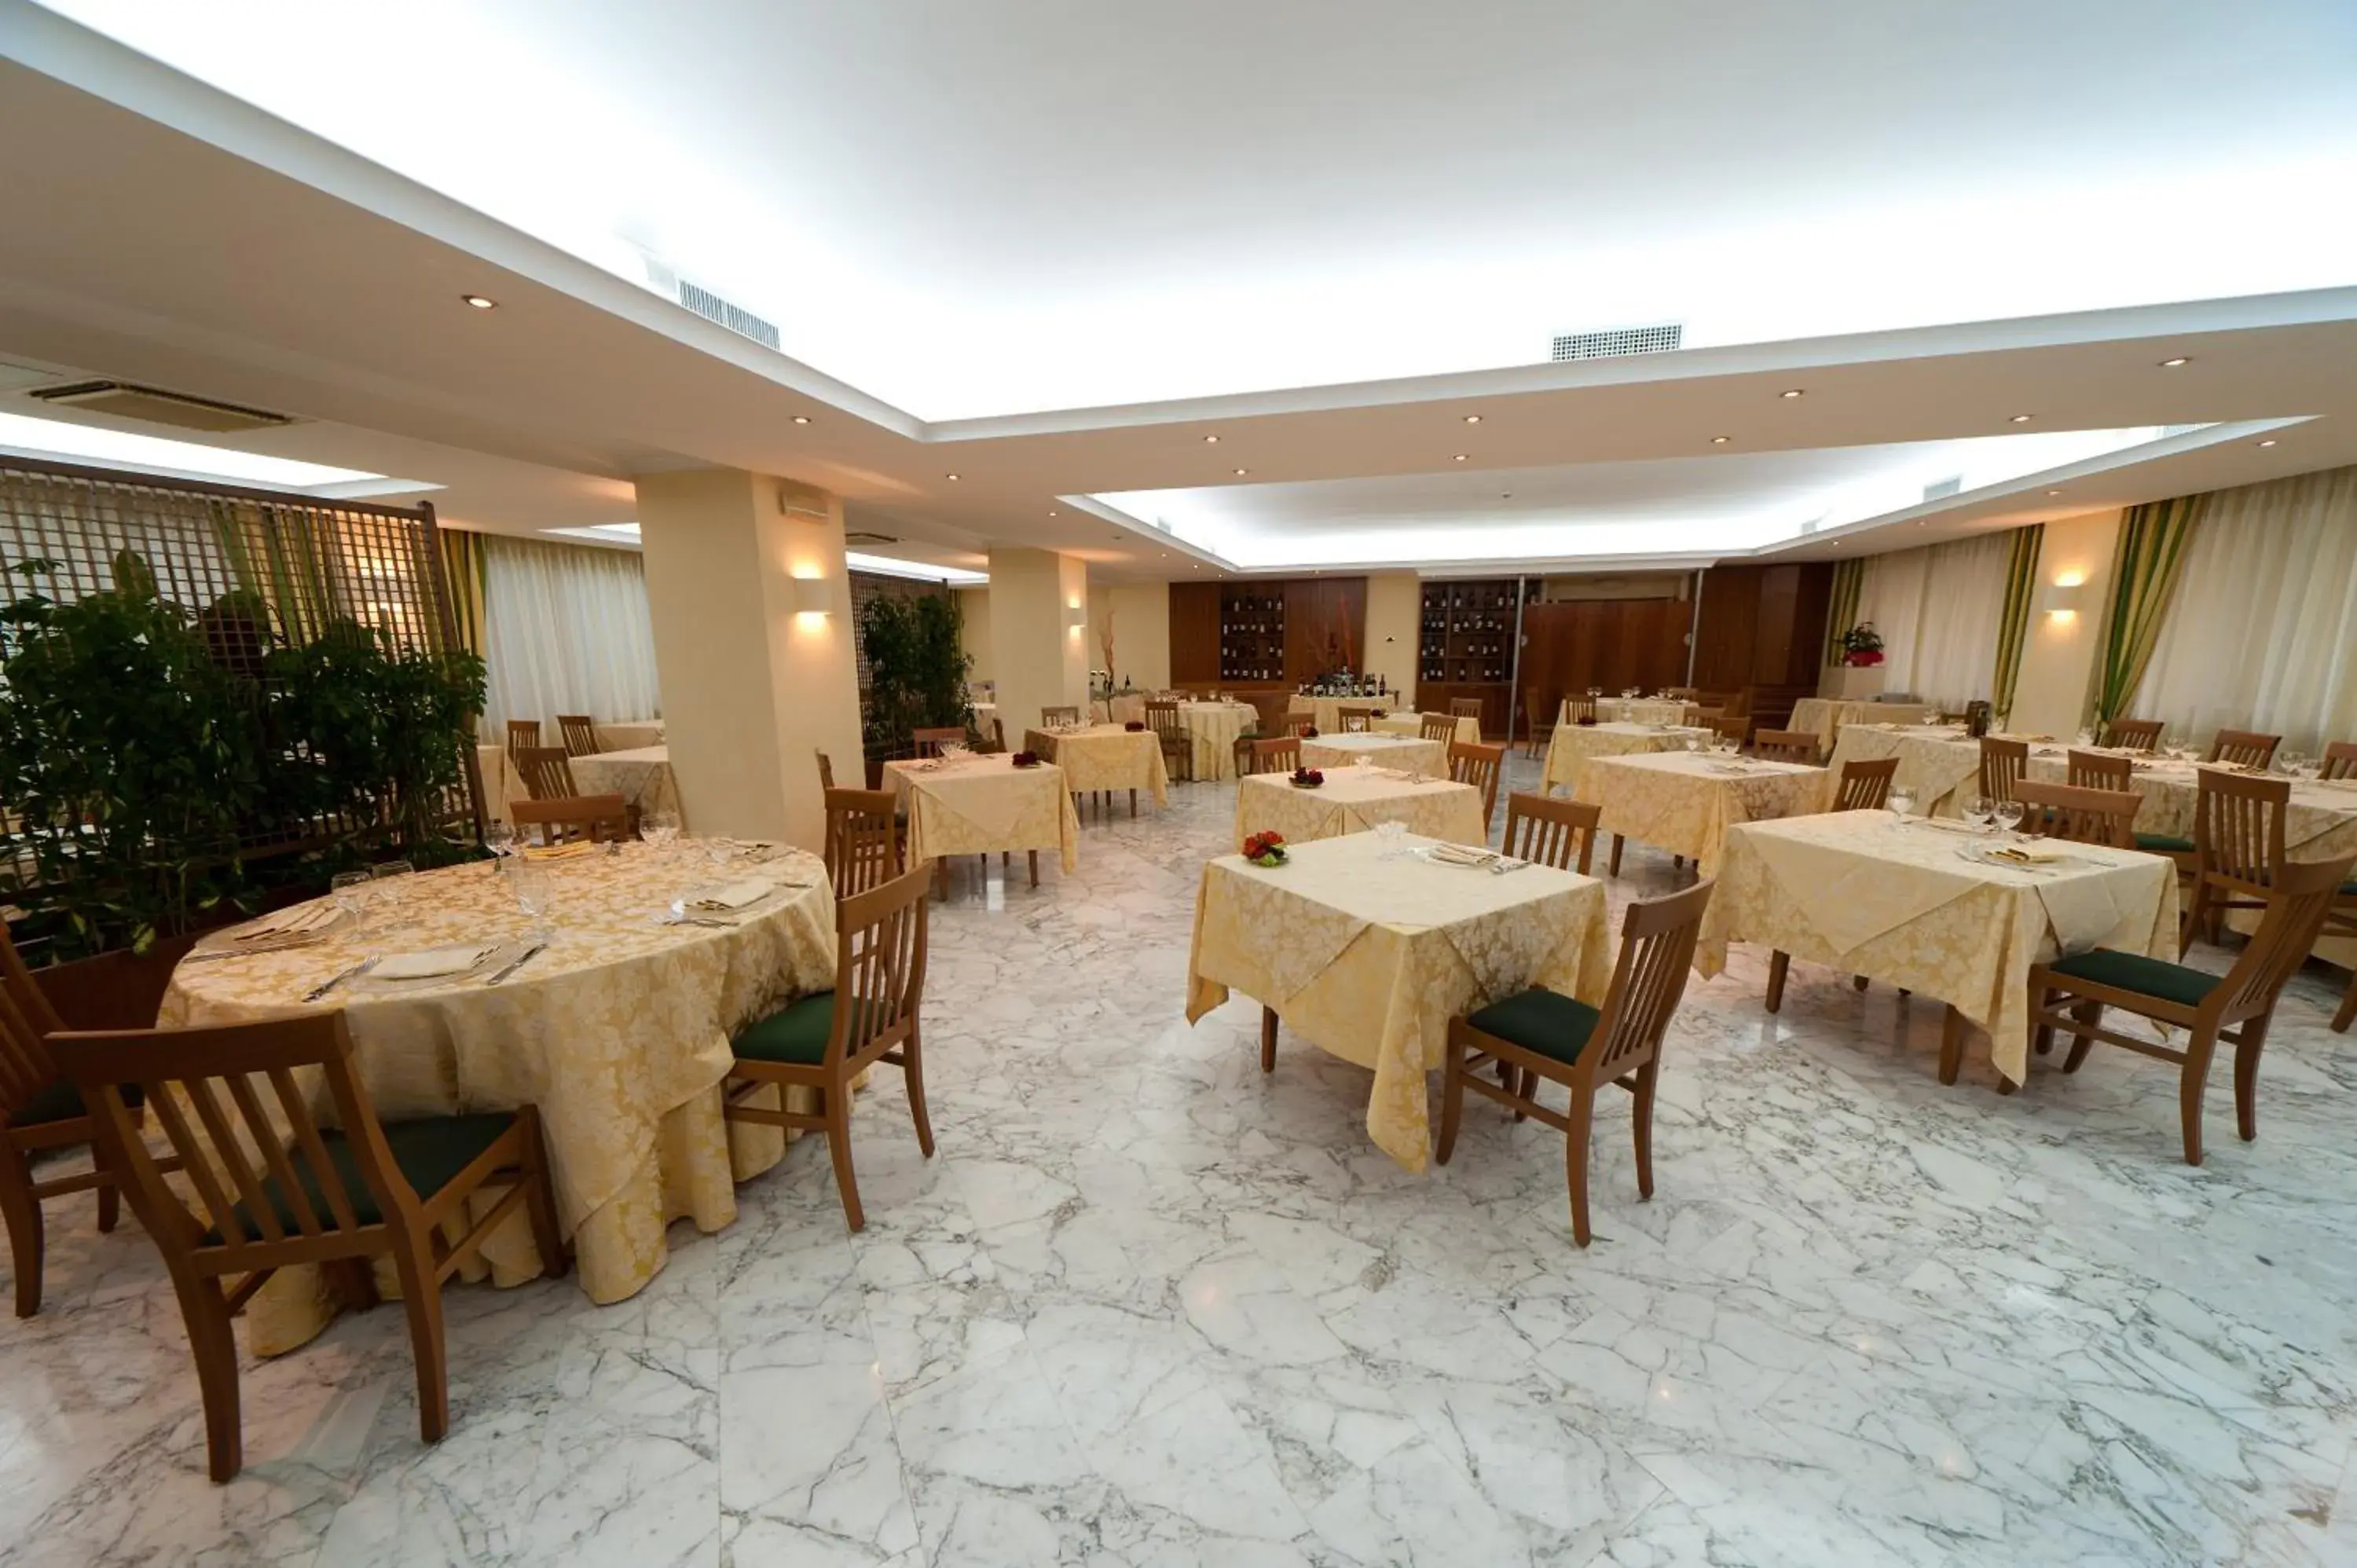 Restaurant/Places to Eat in Citta' Dei Papi